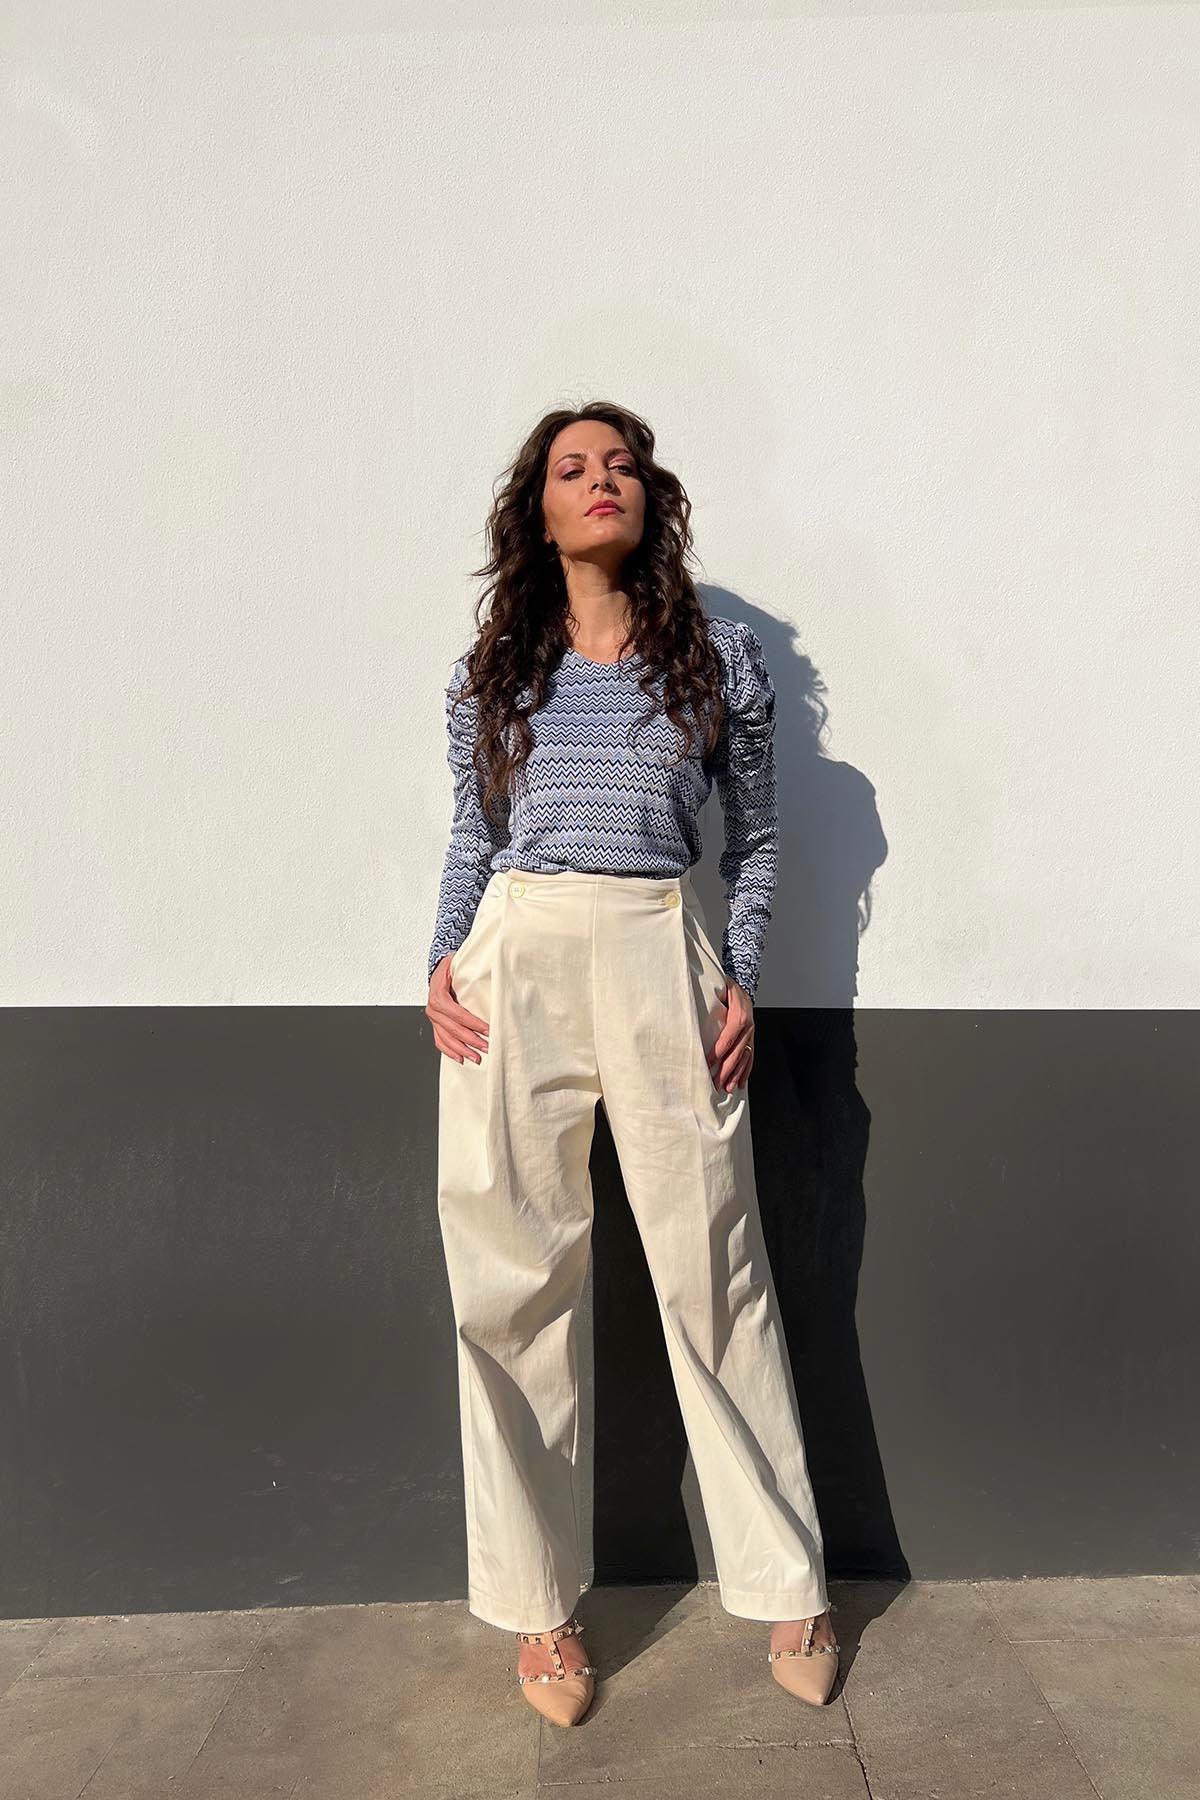 Flavia Amato indossa Pantalone in cotone biologico Elisa brand malia lab atelier moda etica sostenibile artigianale abbigliamento sostenibile donna vestiti ecosostenibili